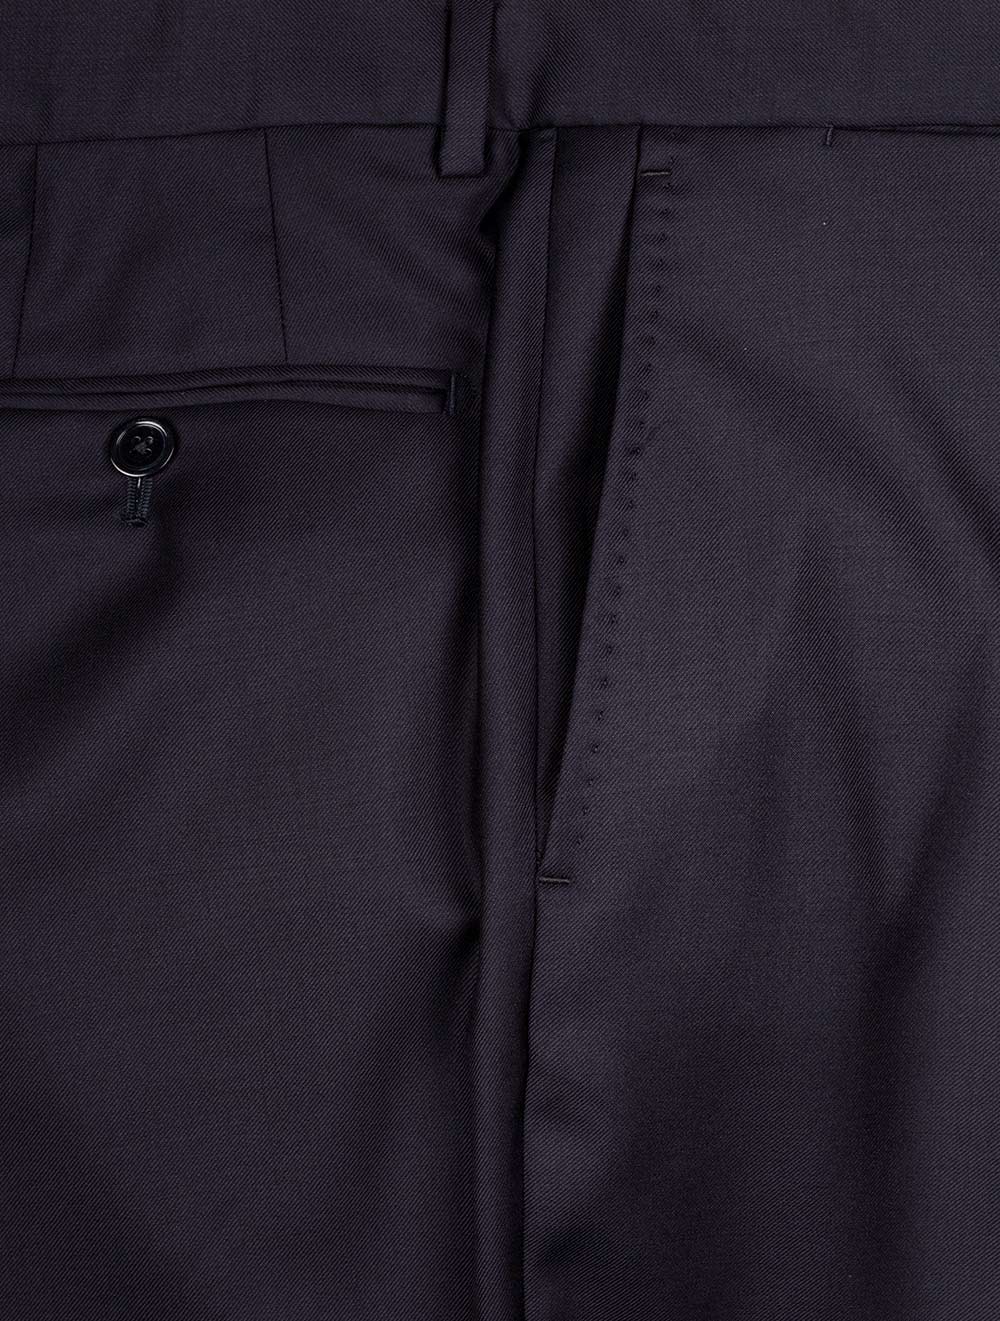 Louis Copeland Ascot Suit Navy 2 piece 2 button notch lapel soft shoulder flap pockets 7